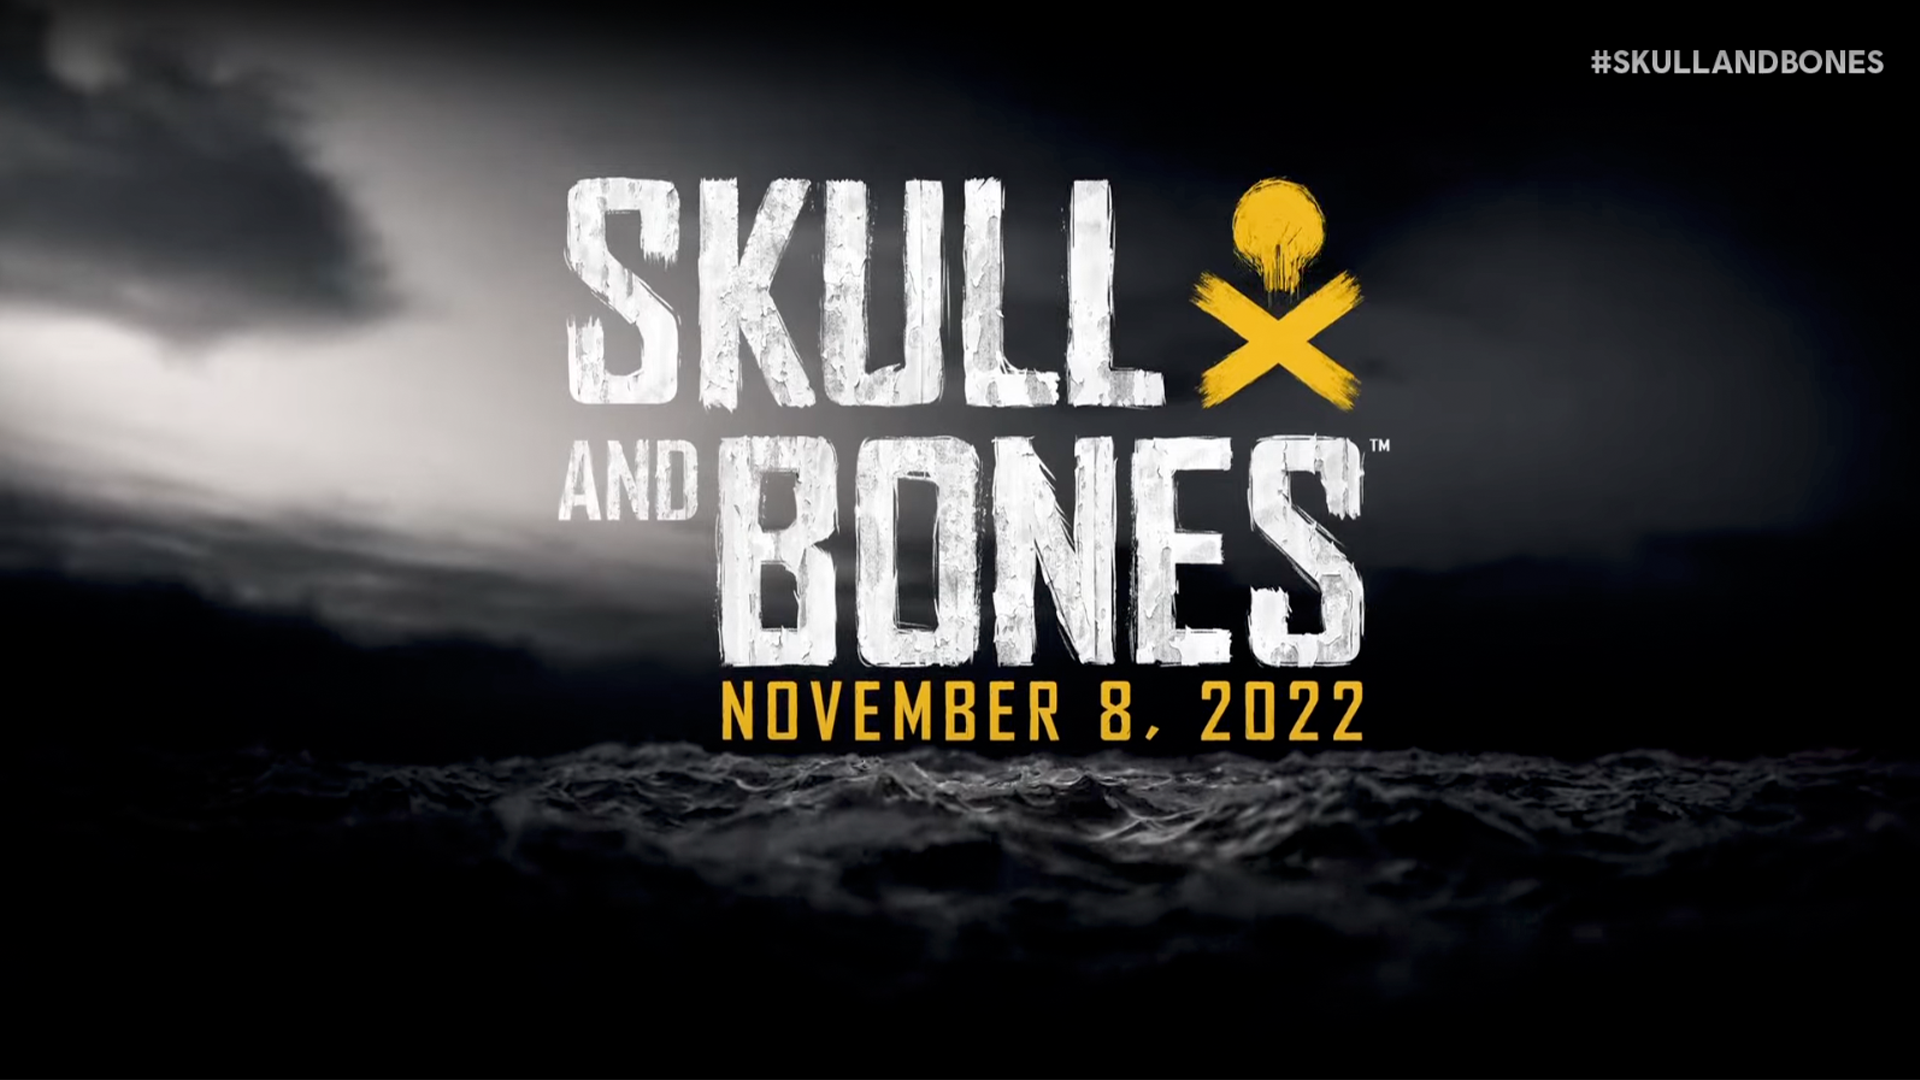 Ubisoft Forward  O Mundo de Skull And Bones 